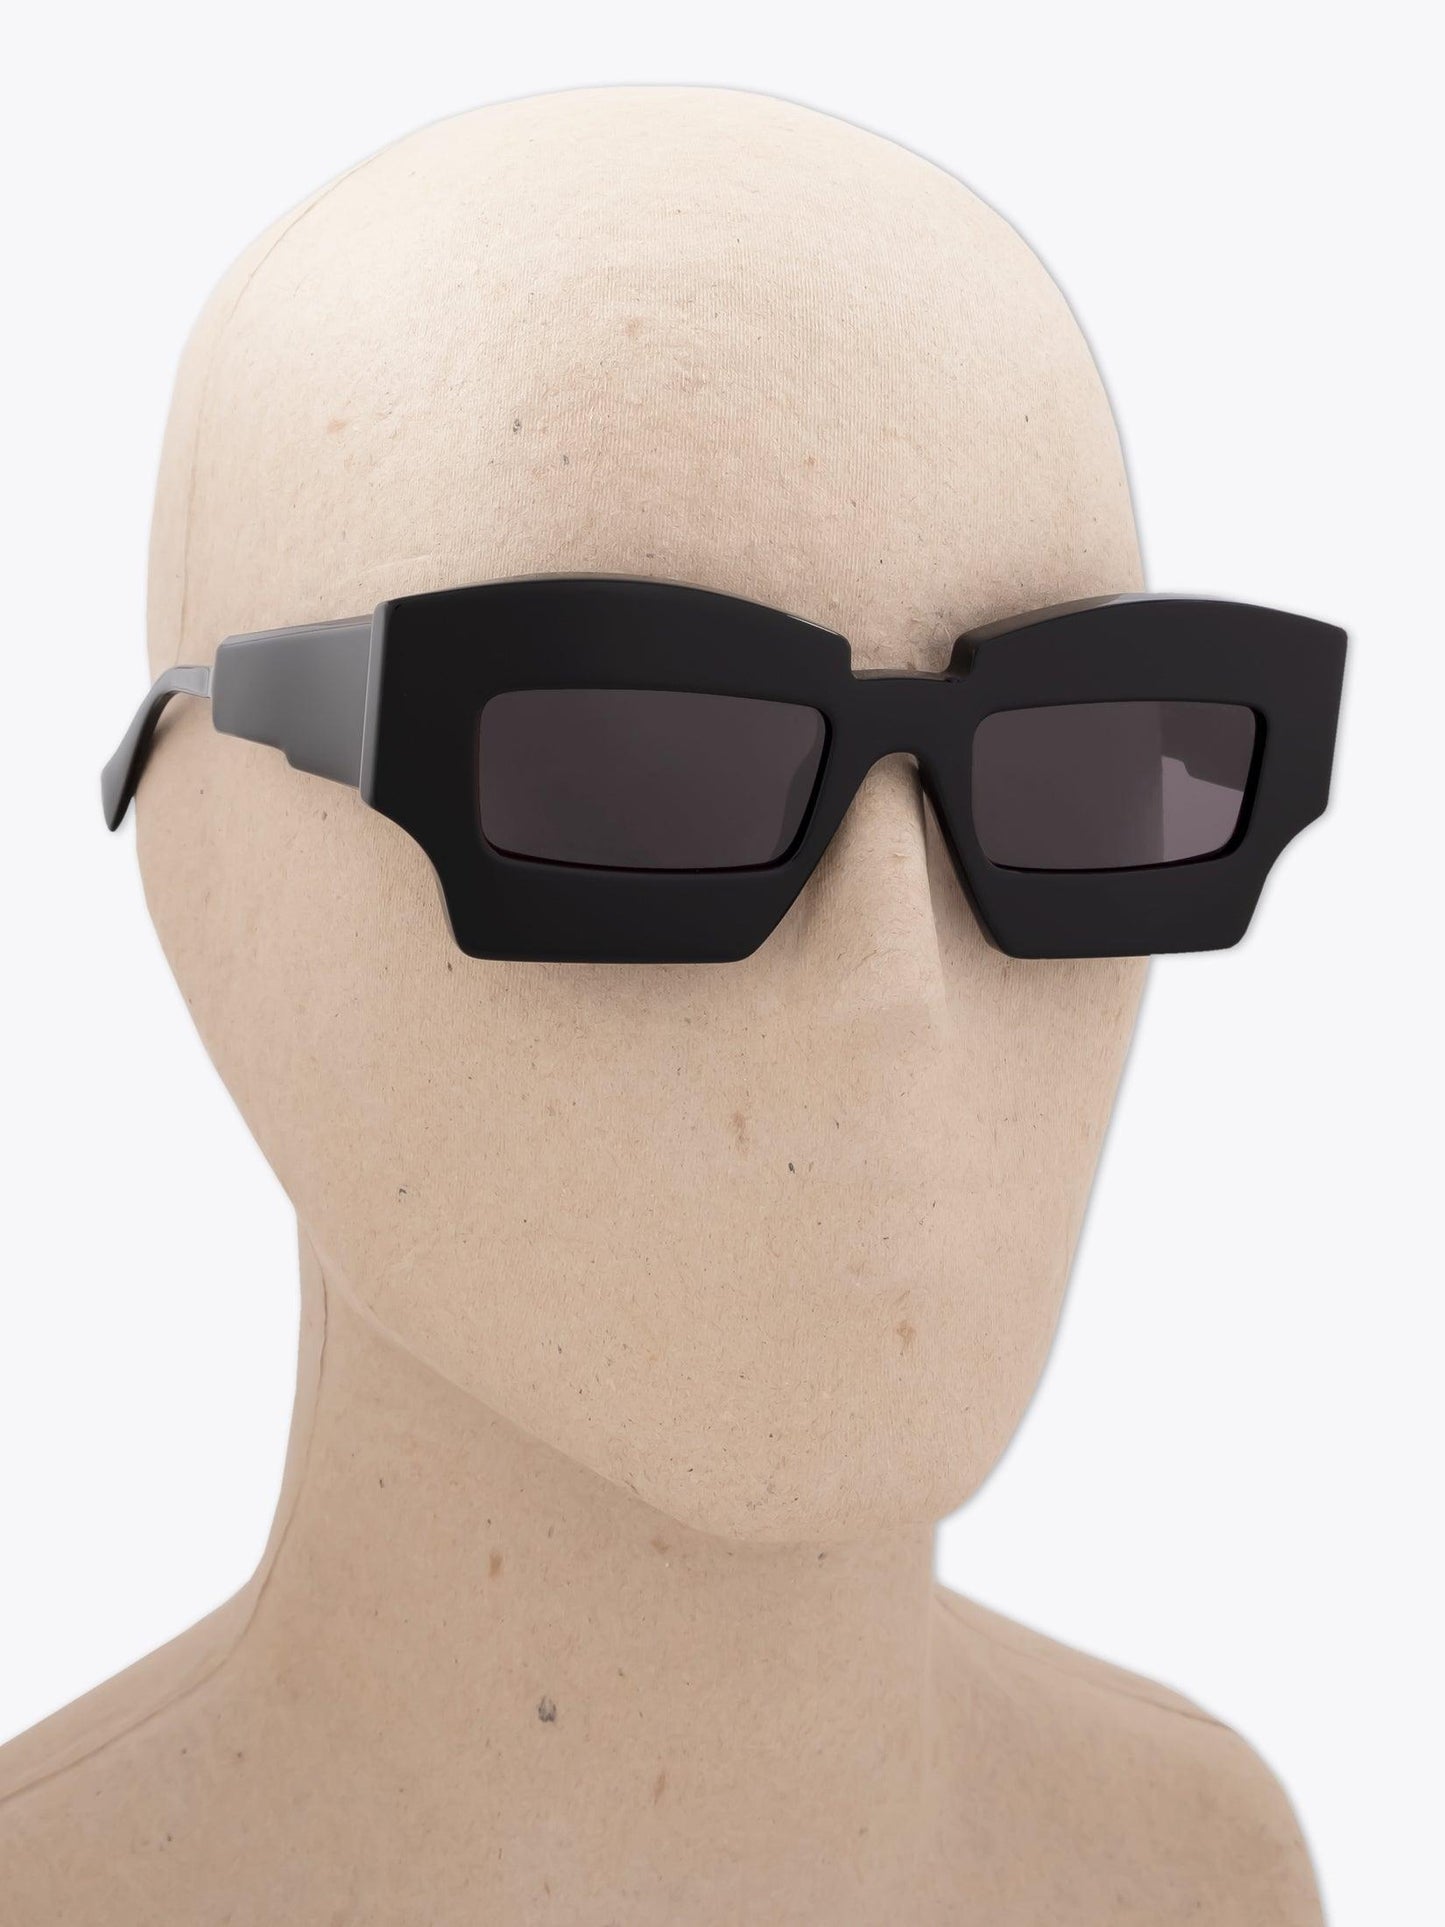 Kuboraum Mask X6 Black Sunglasses - APODEP.com